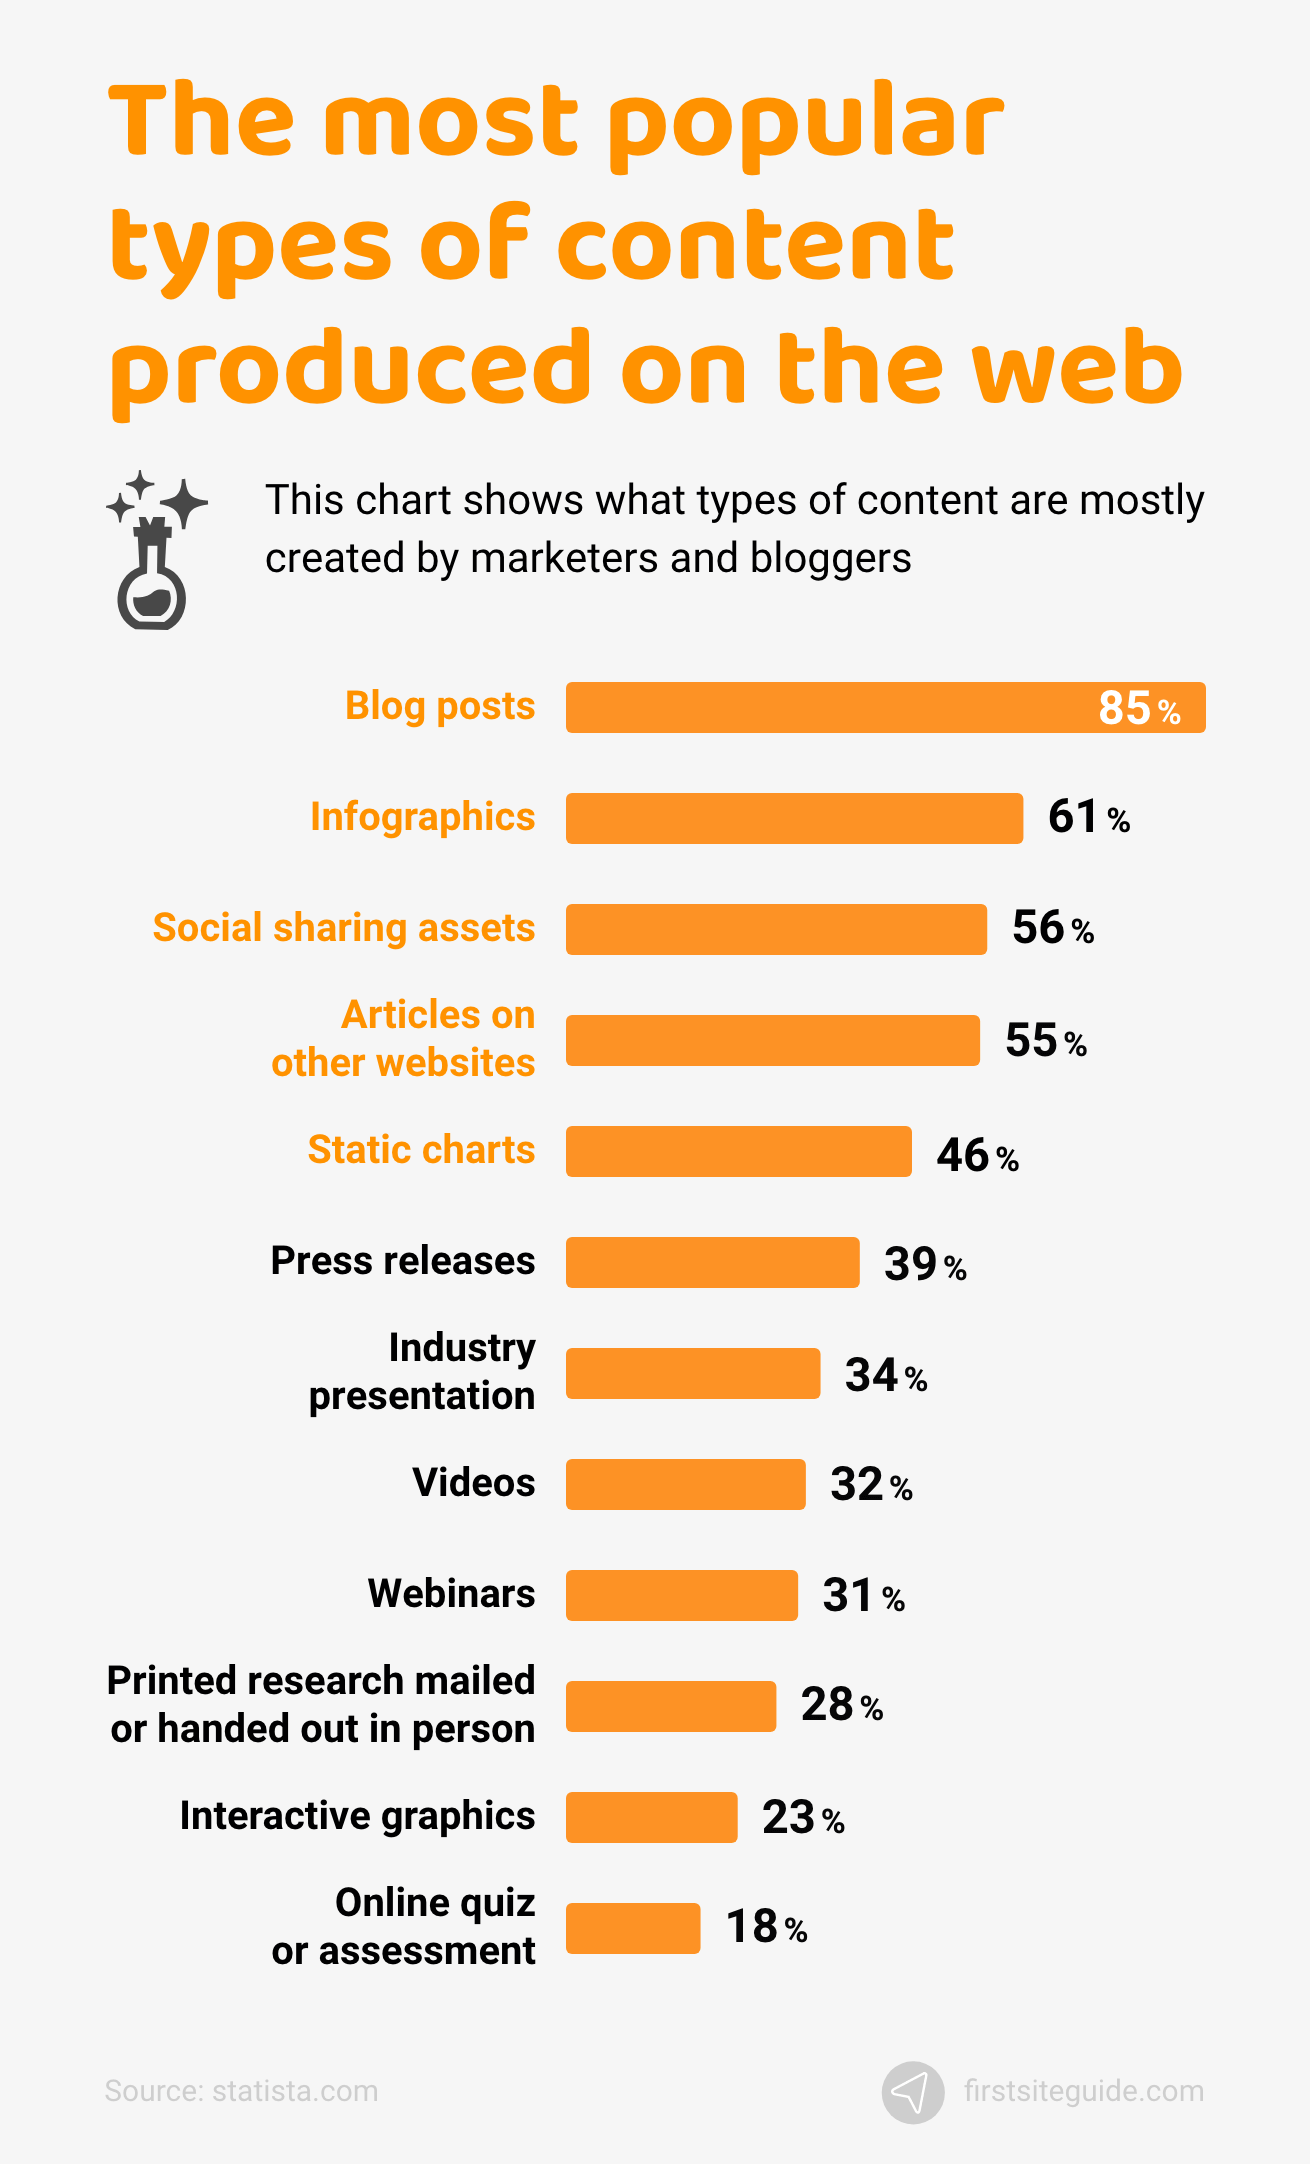 Os tipos de conteúdo mais populares produzidos na web